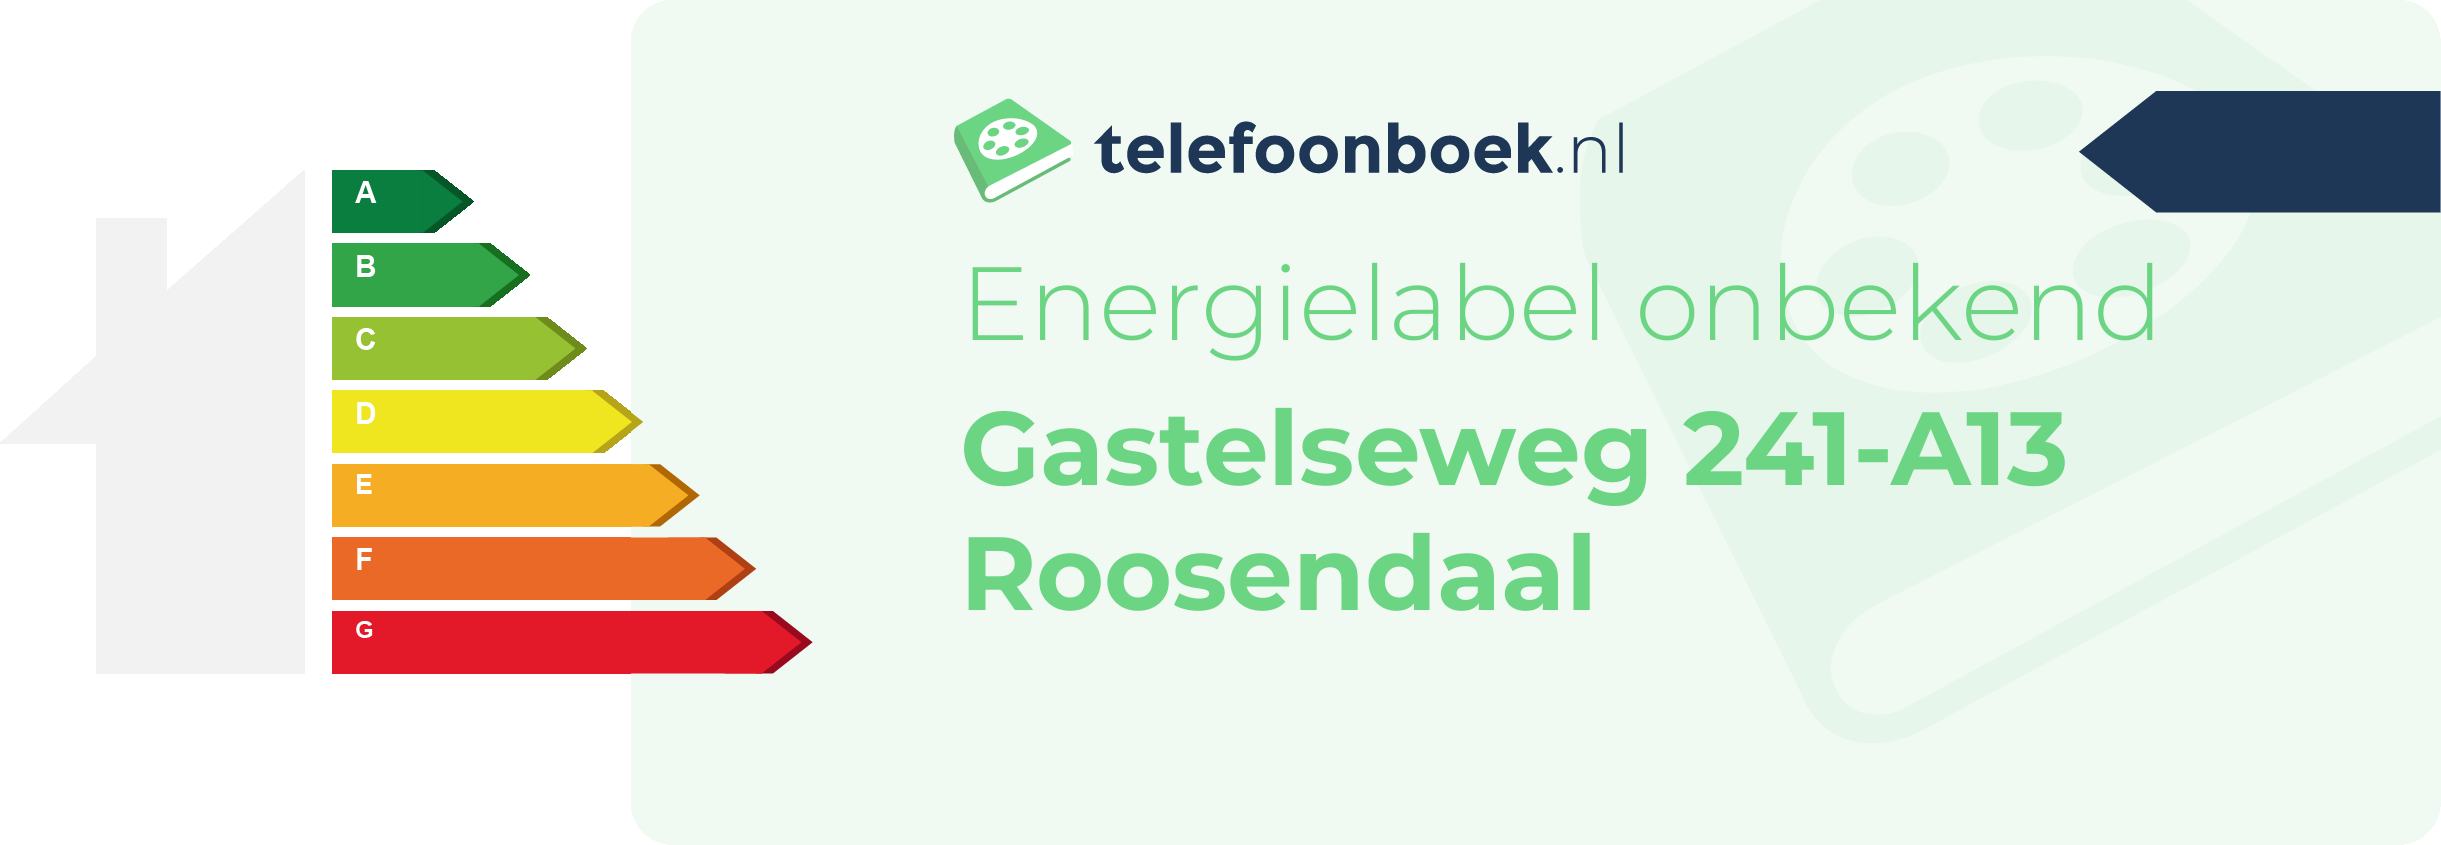 Energielabel Gastelseweg 241-A13 Roosendaal